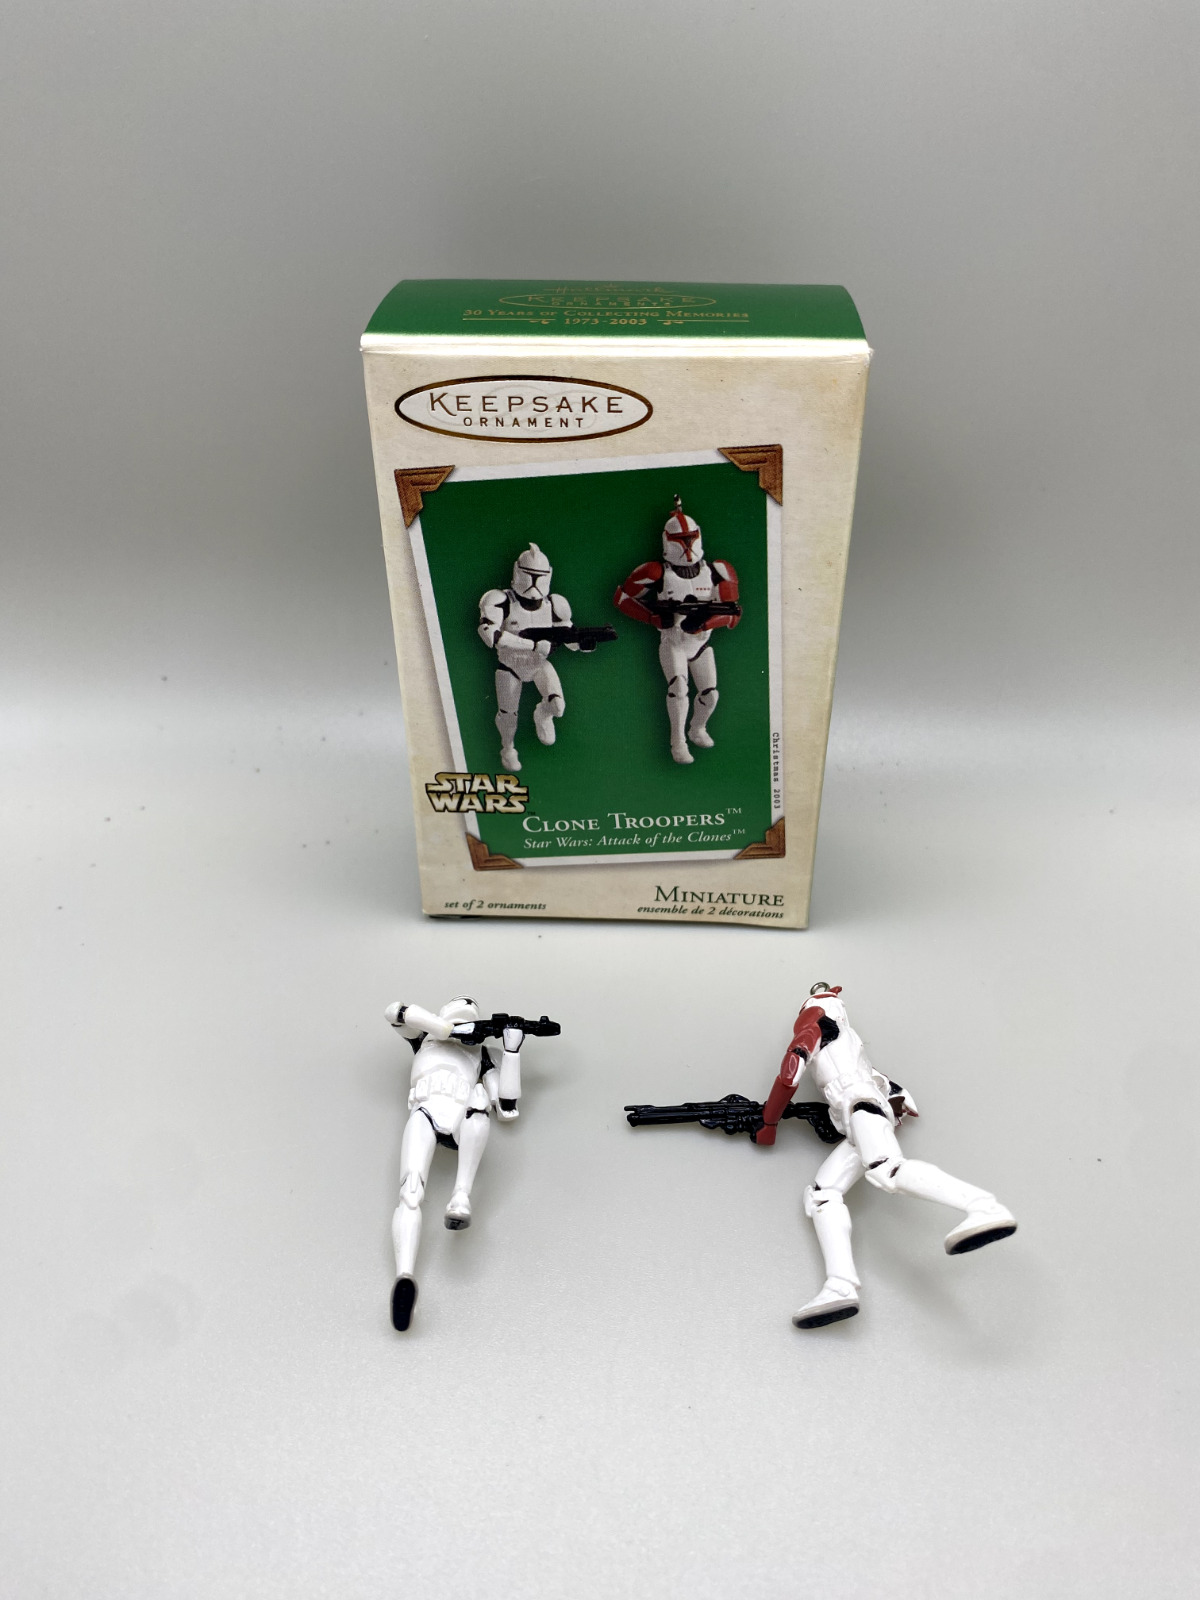 Hallmark Keepsake Ornament Star Wars Clone Troopers 2003 Set of 2 Miniature